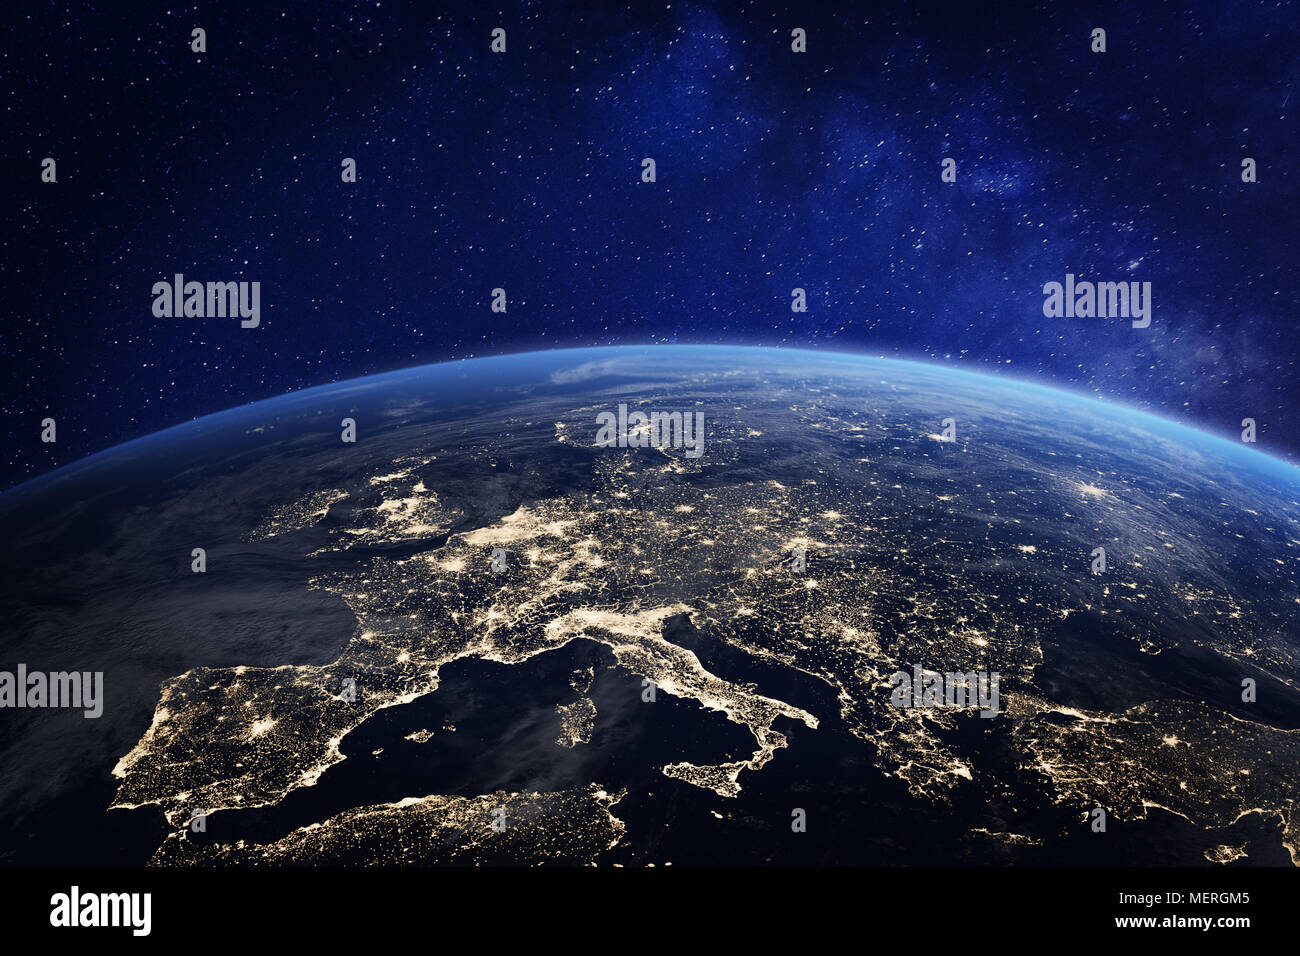 L'Europa di notte visto dallo spazio con le luci della città che mostra attività umana in Germania, Francia, Spagna, Italia e altri paesi, rendering 3d del pianeta Foto Stock